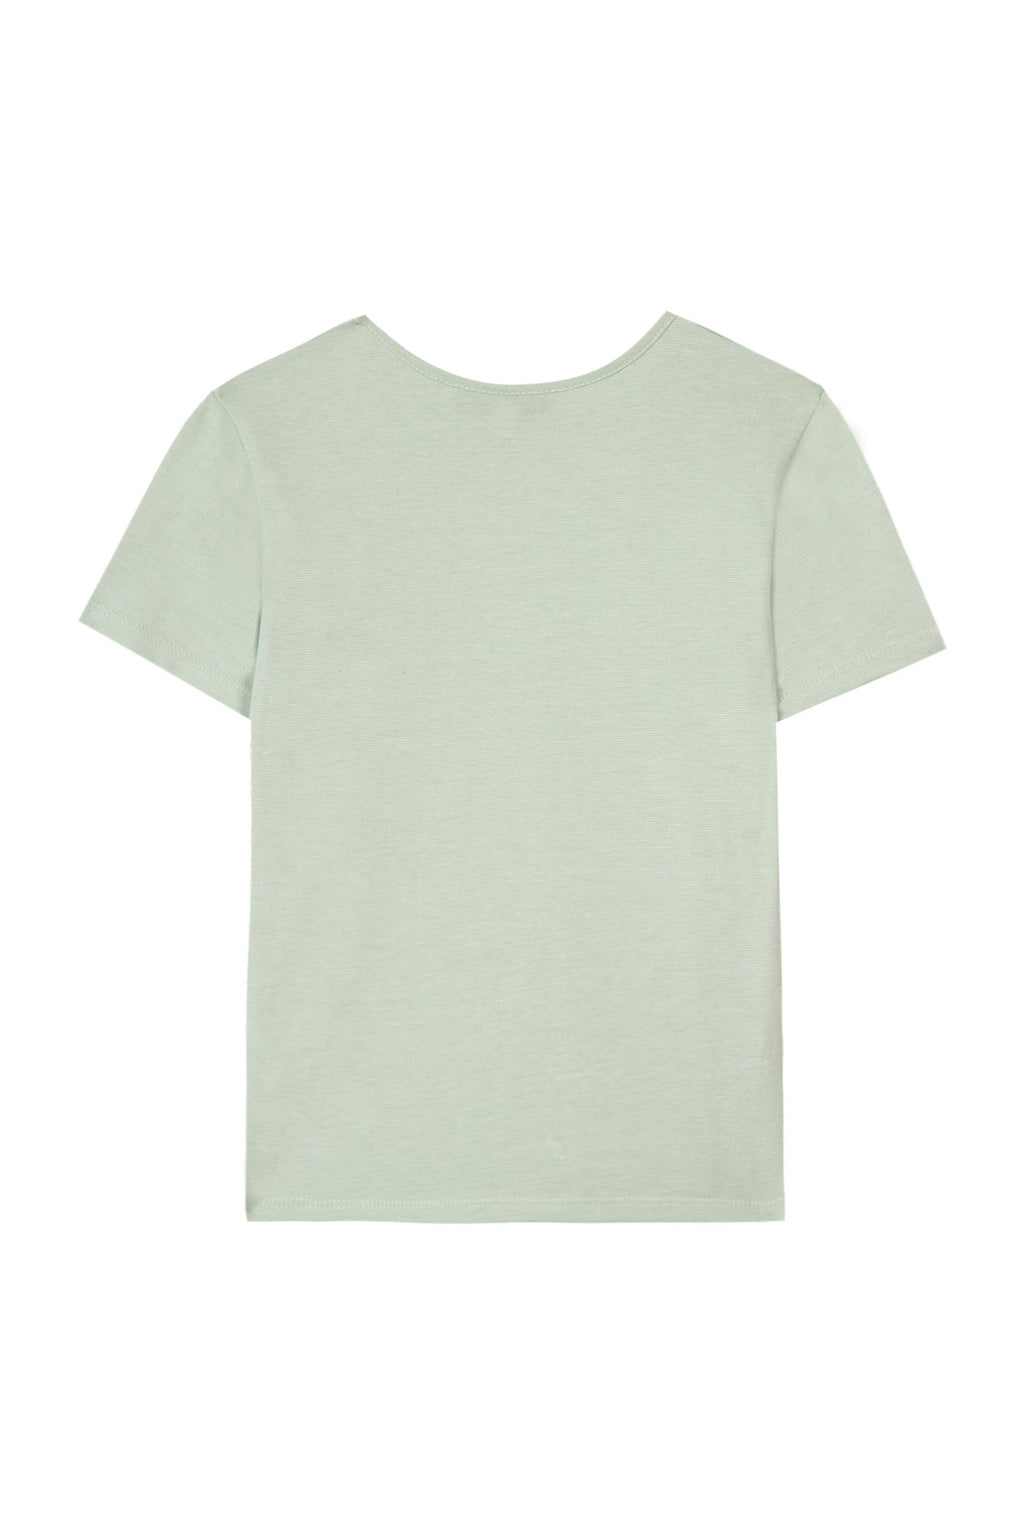 T -Shirt - Grün natürliche Beschriftung